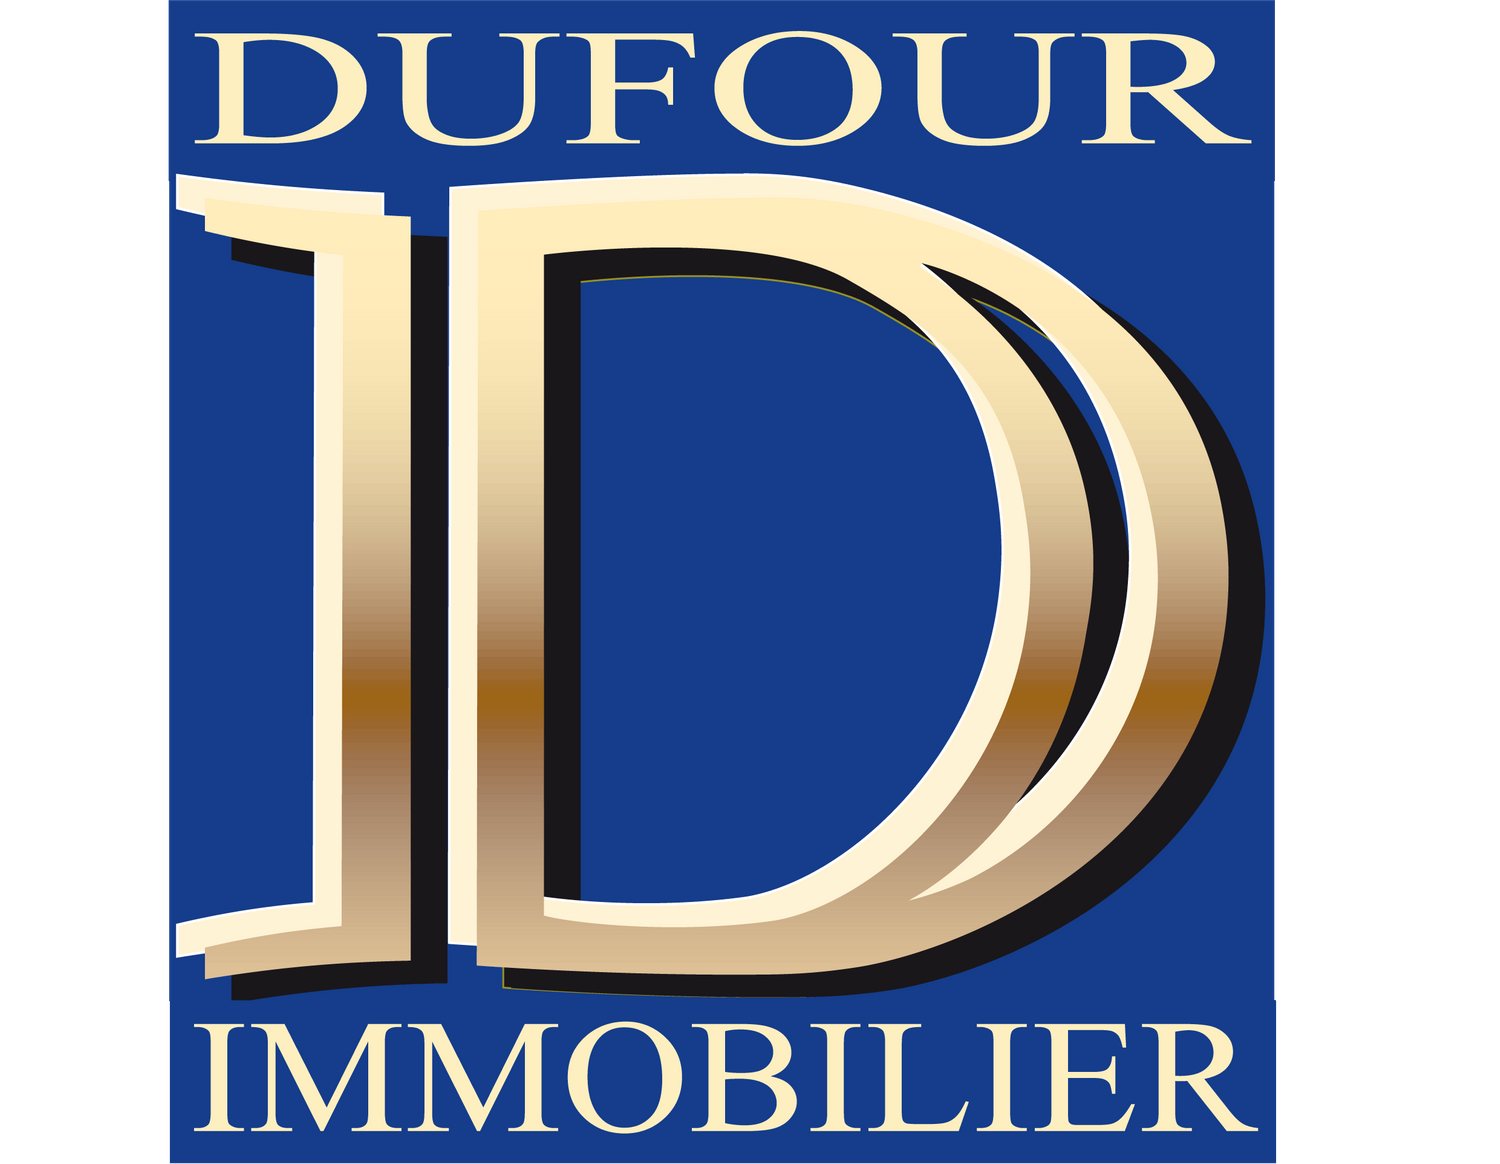 Real estate company DUFOUR IMMOBILIER La Valette-du-Var